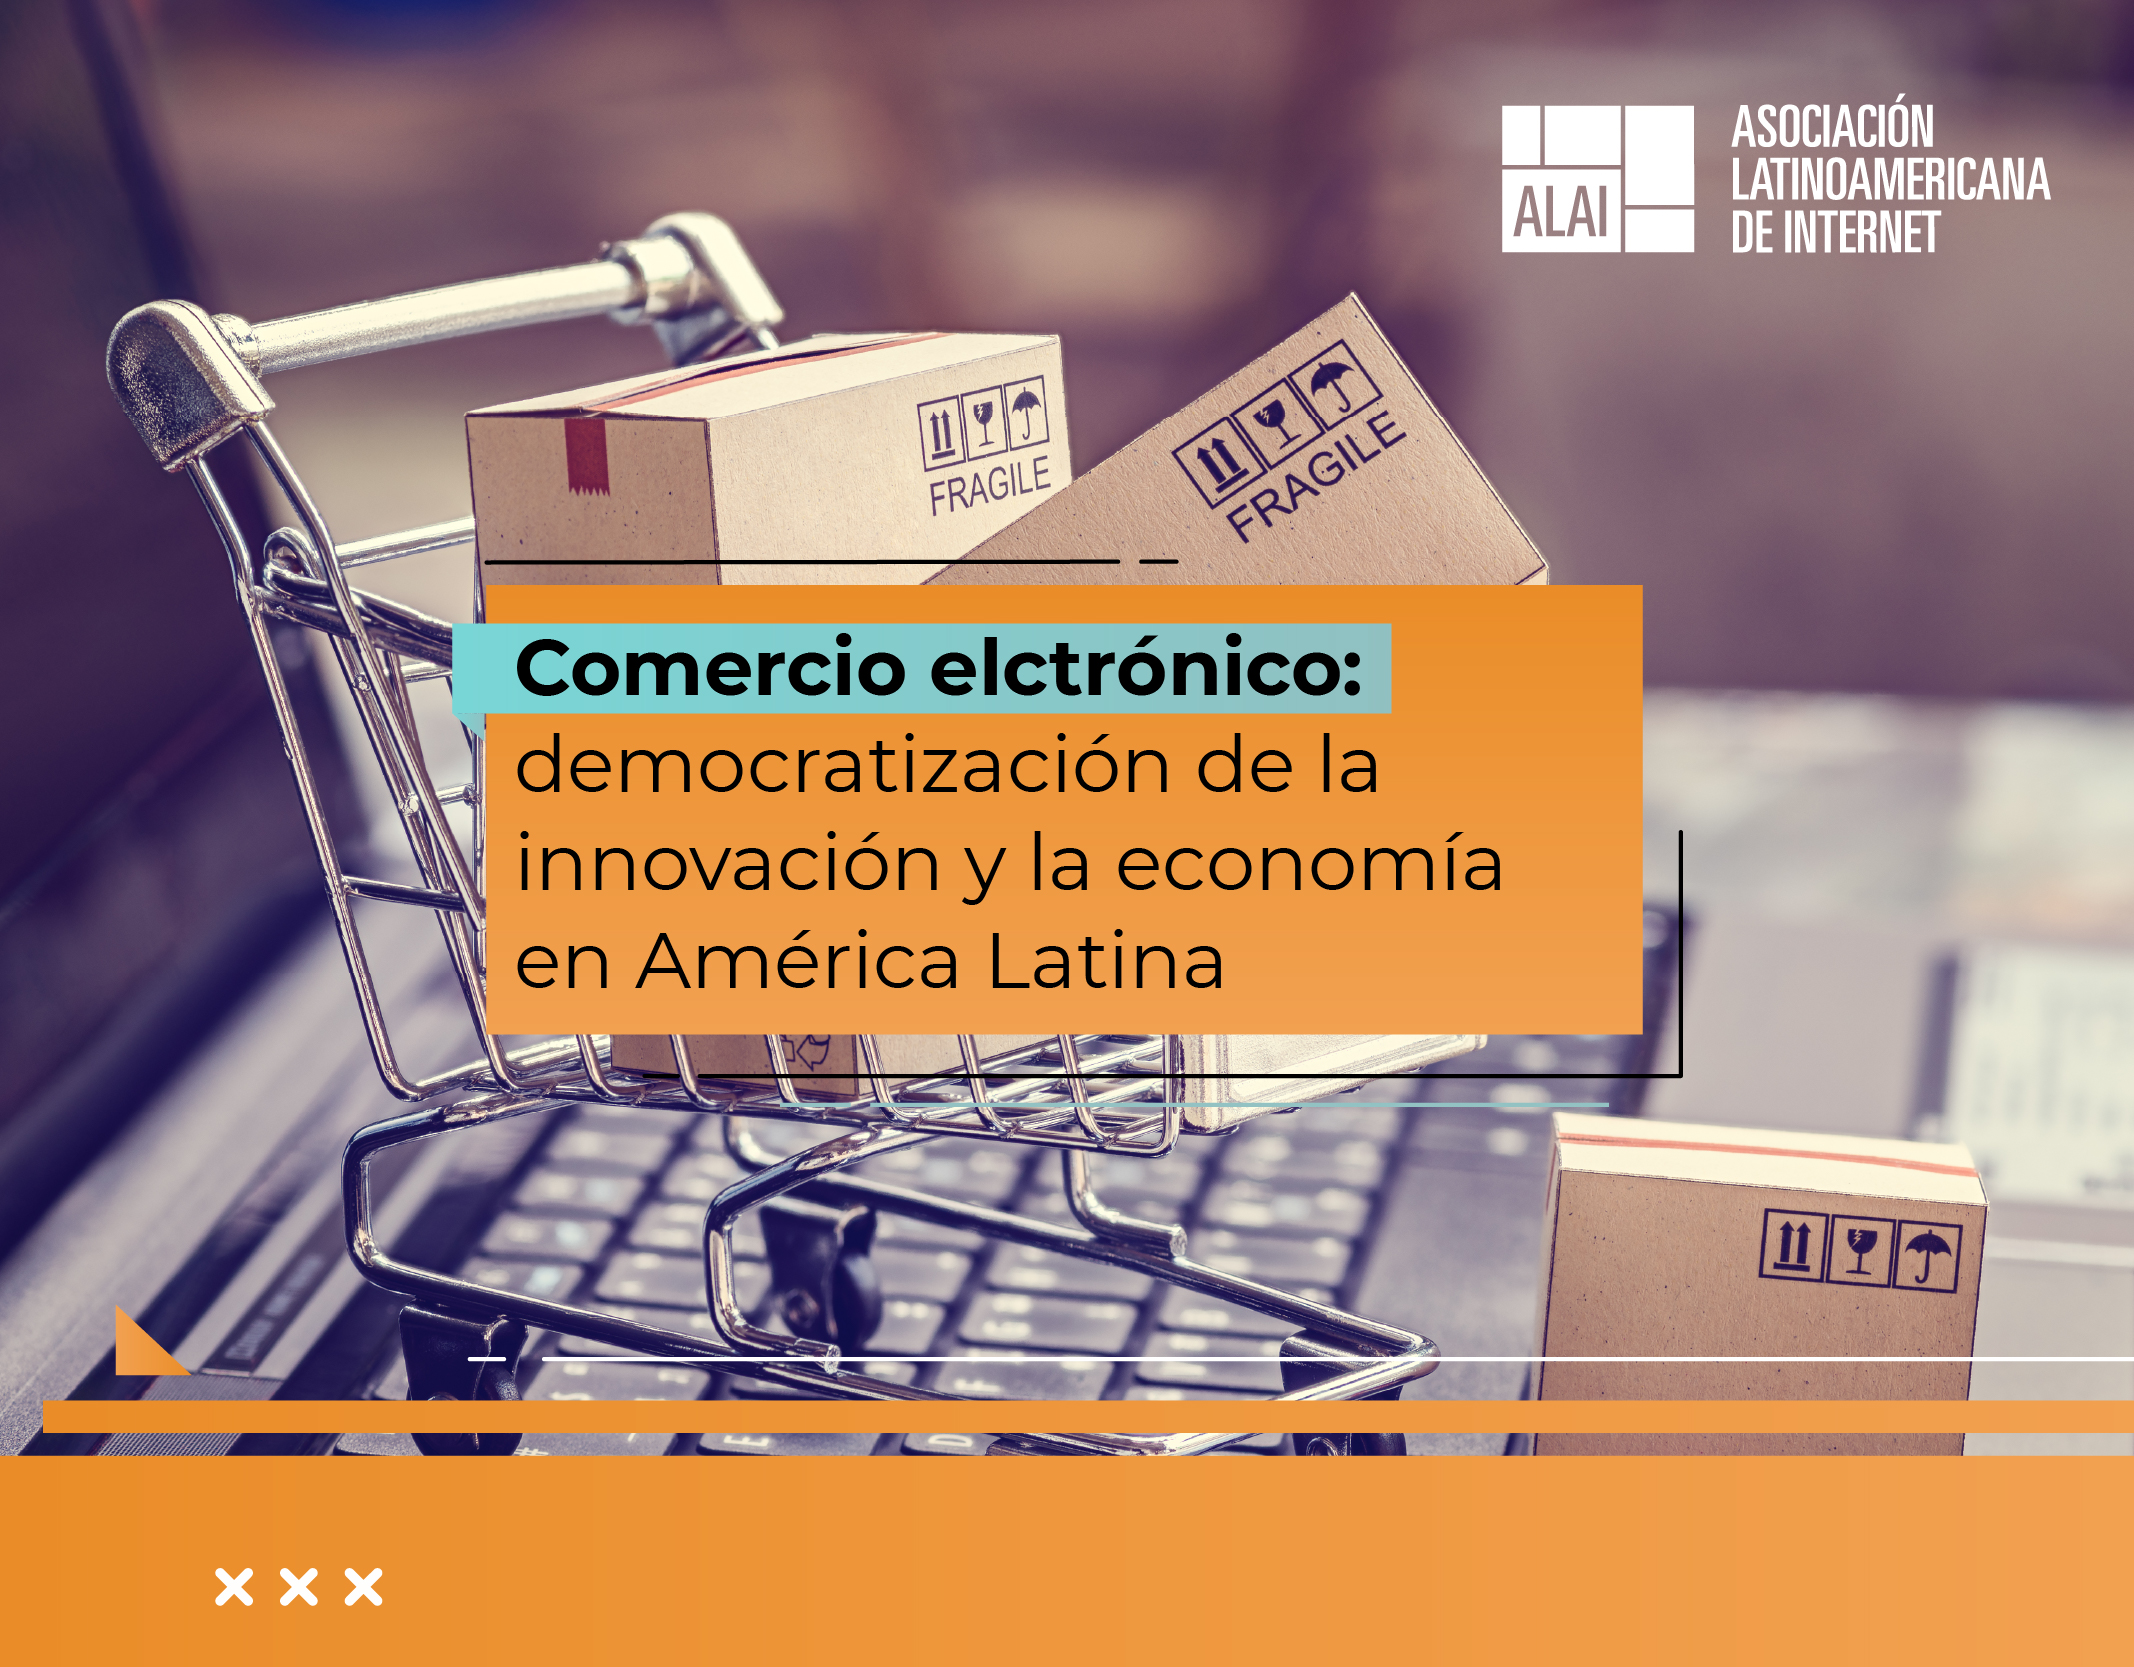 Comercio electrónico: democratización de la innovación y la economía en América Latina